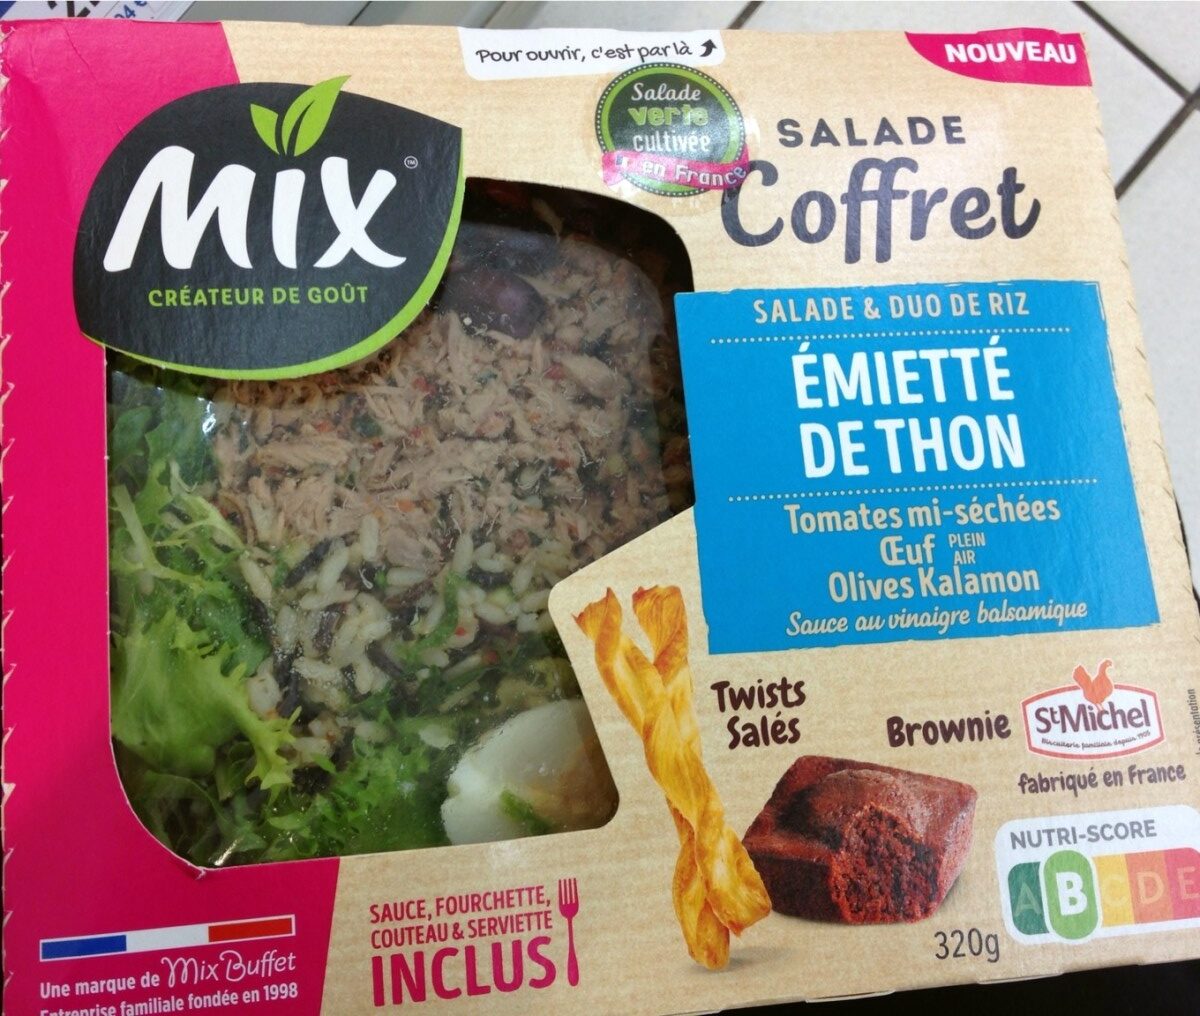 Salade Emietté de thon - Product - fr